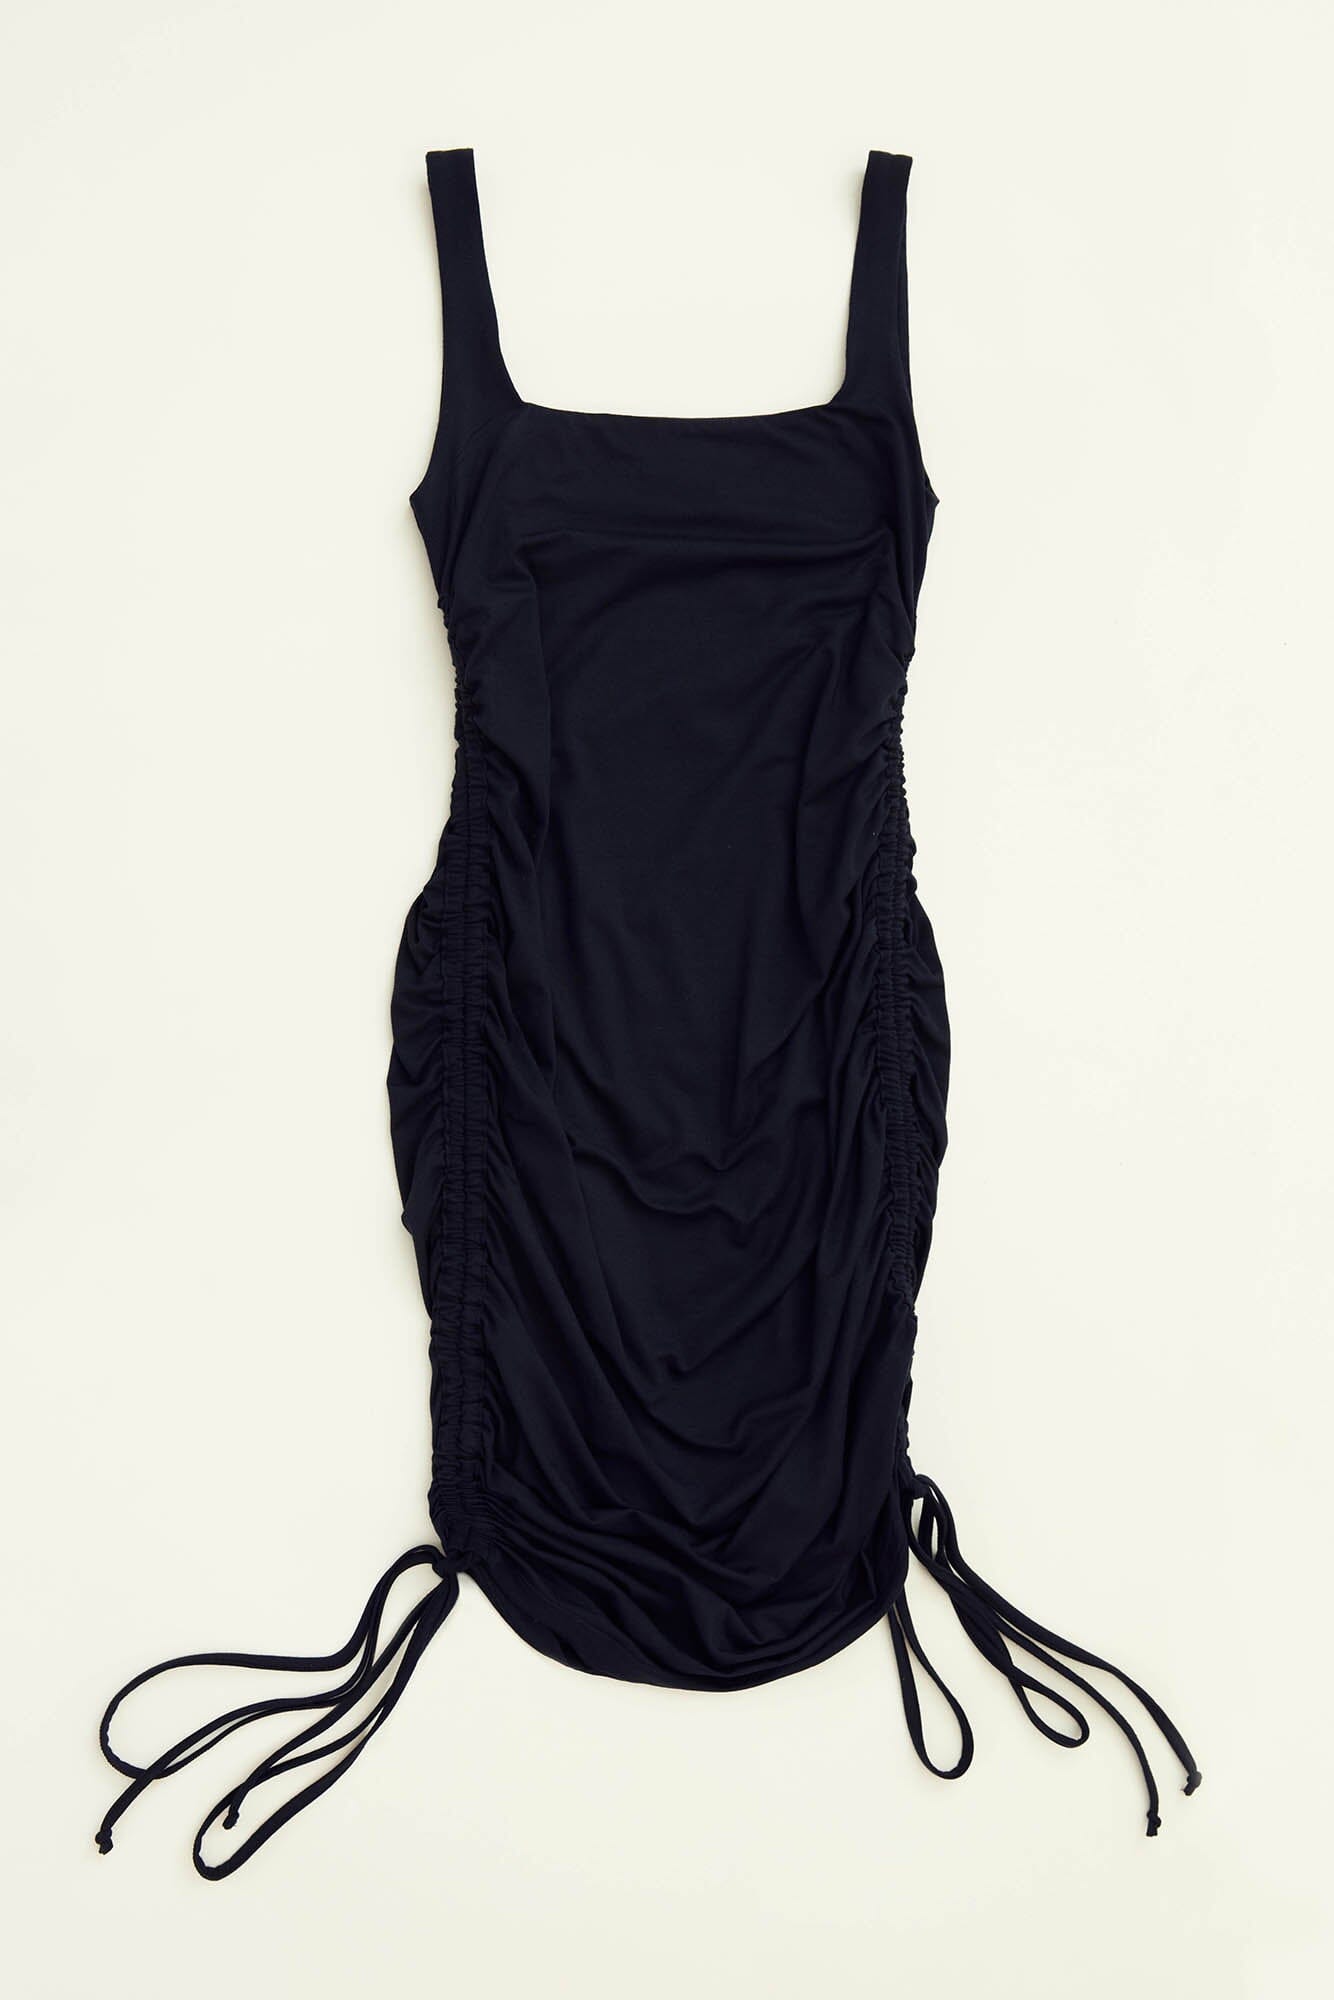 Temi 3-in-1 Maternity Dress in smoky black